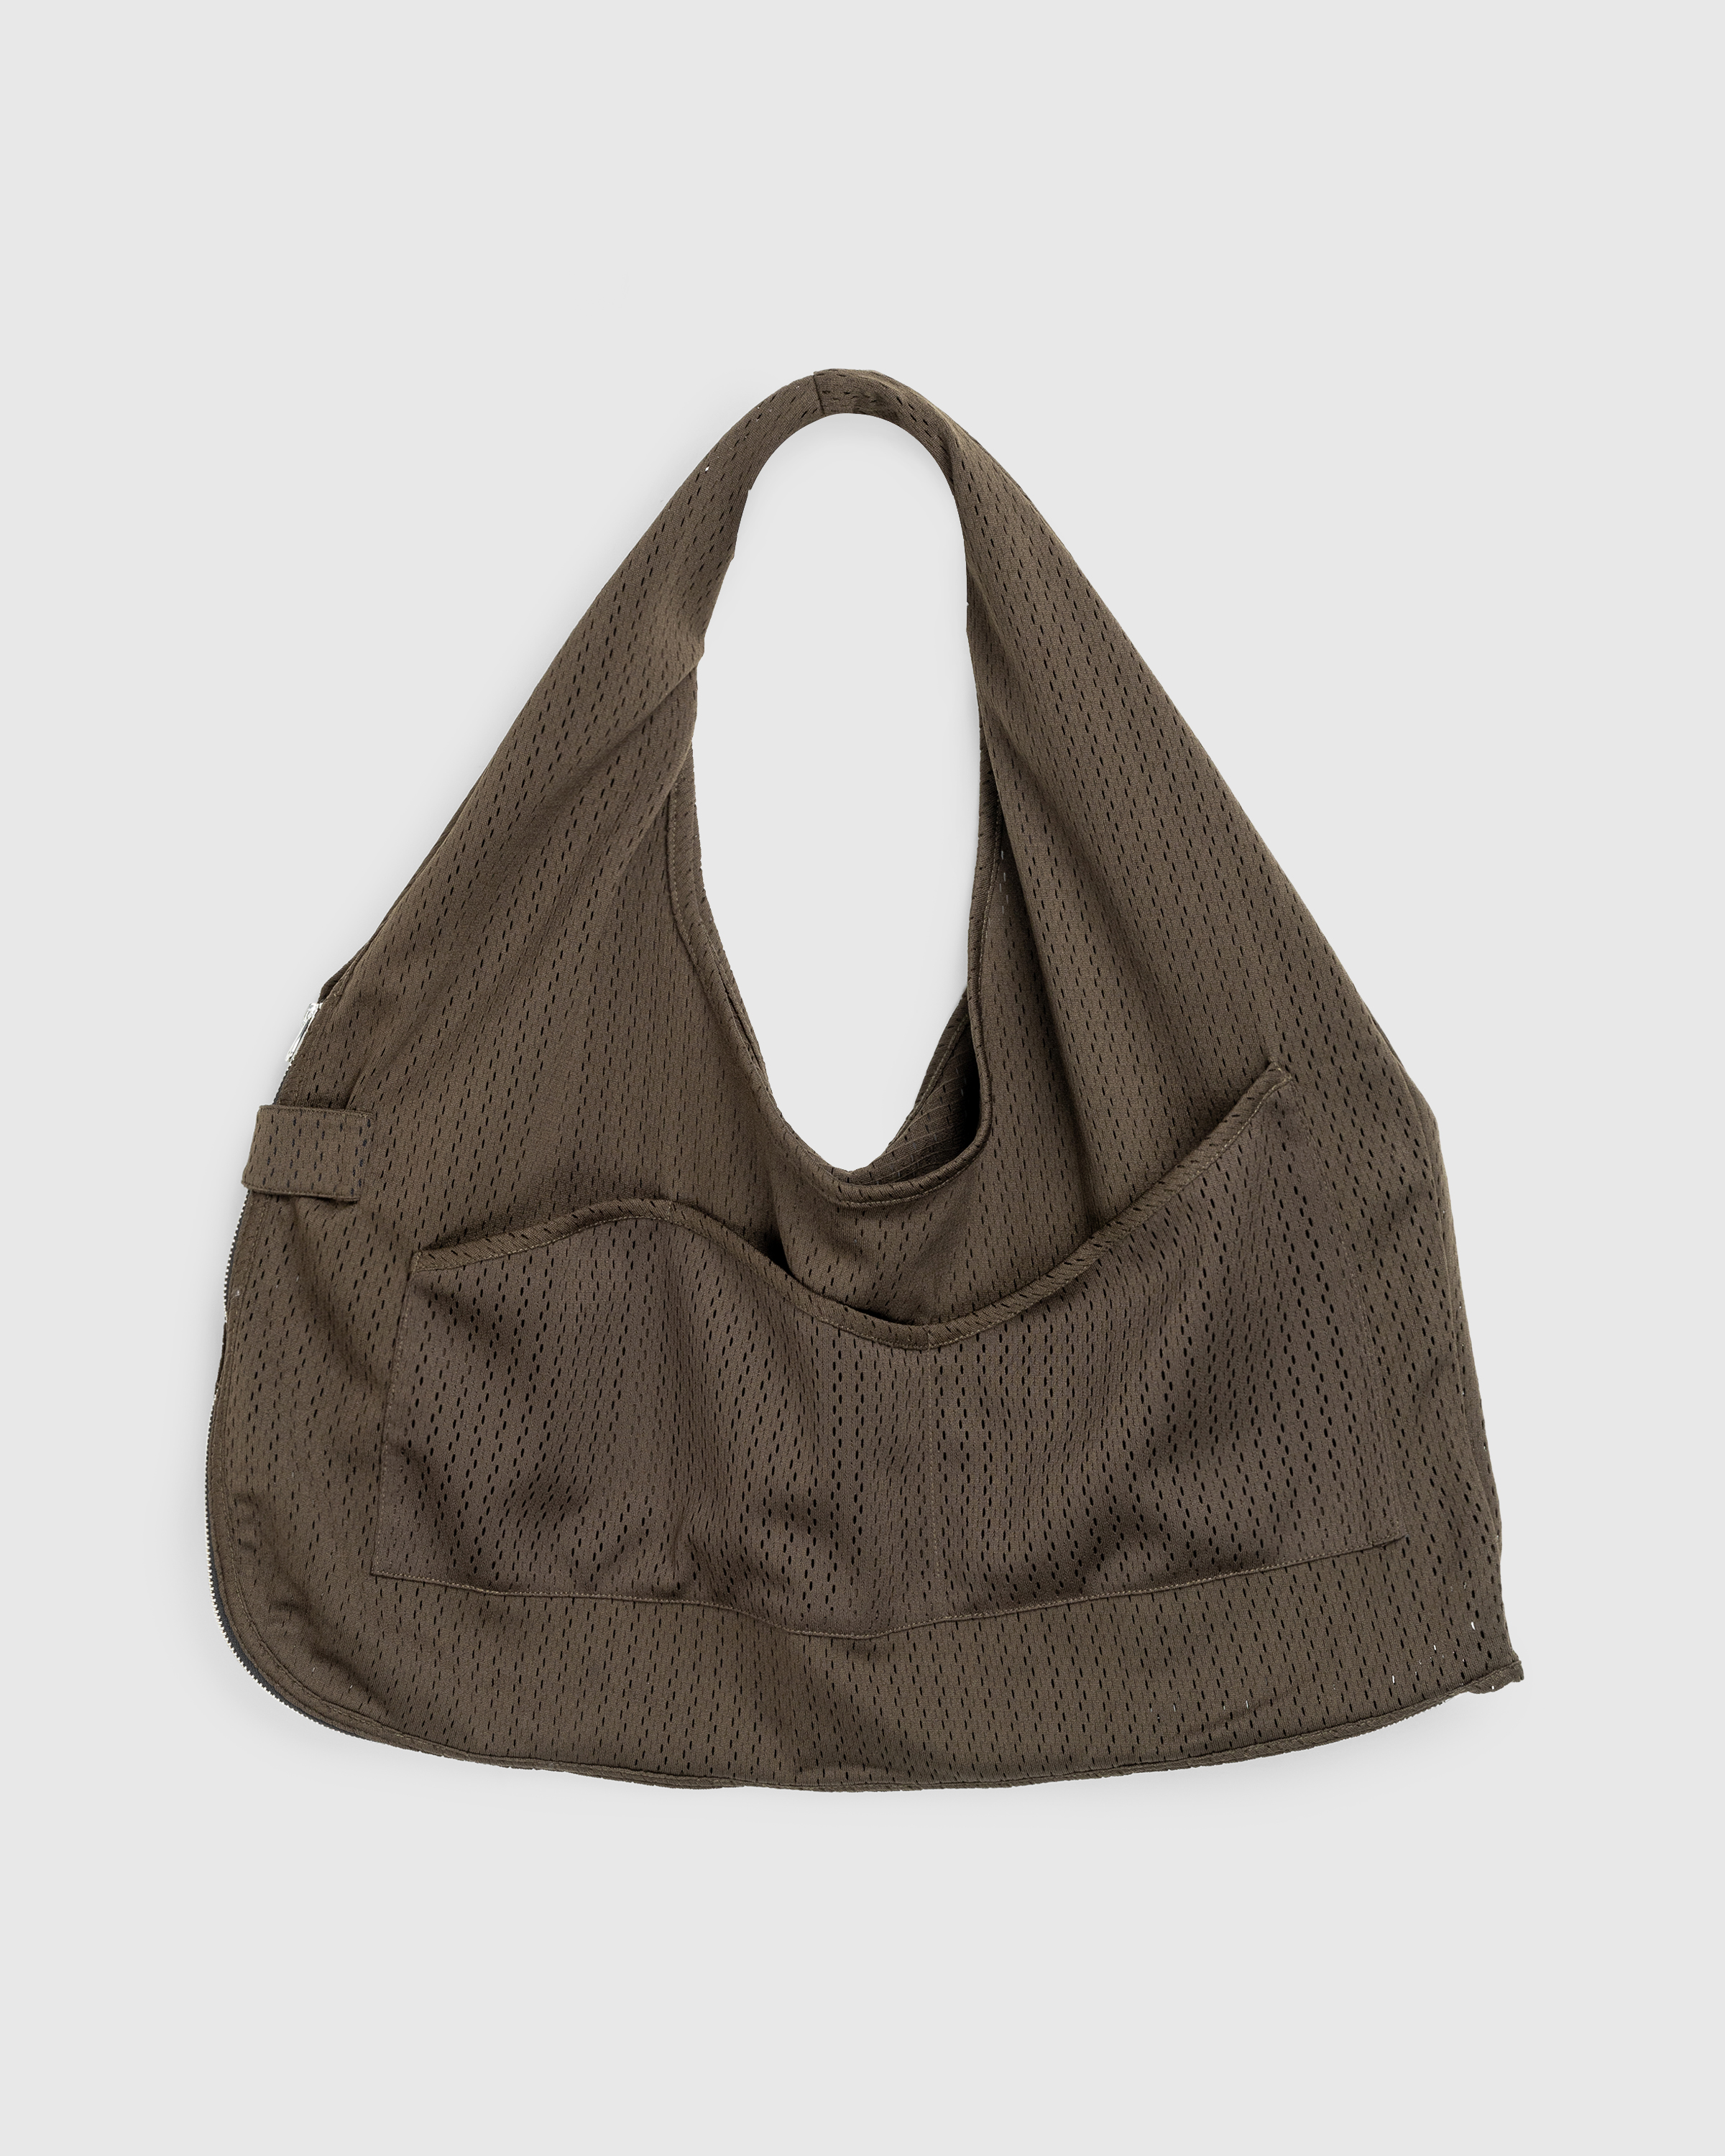 AFFXWRKS – Bag Vest Olive Drab - Vests - Green - Image 3